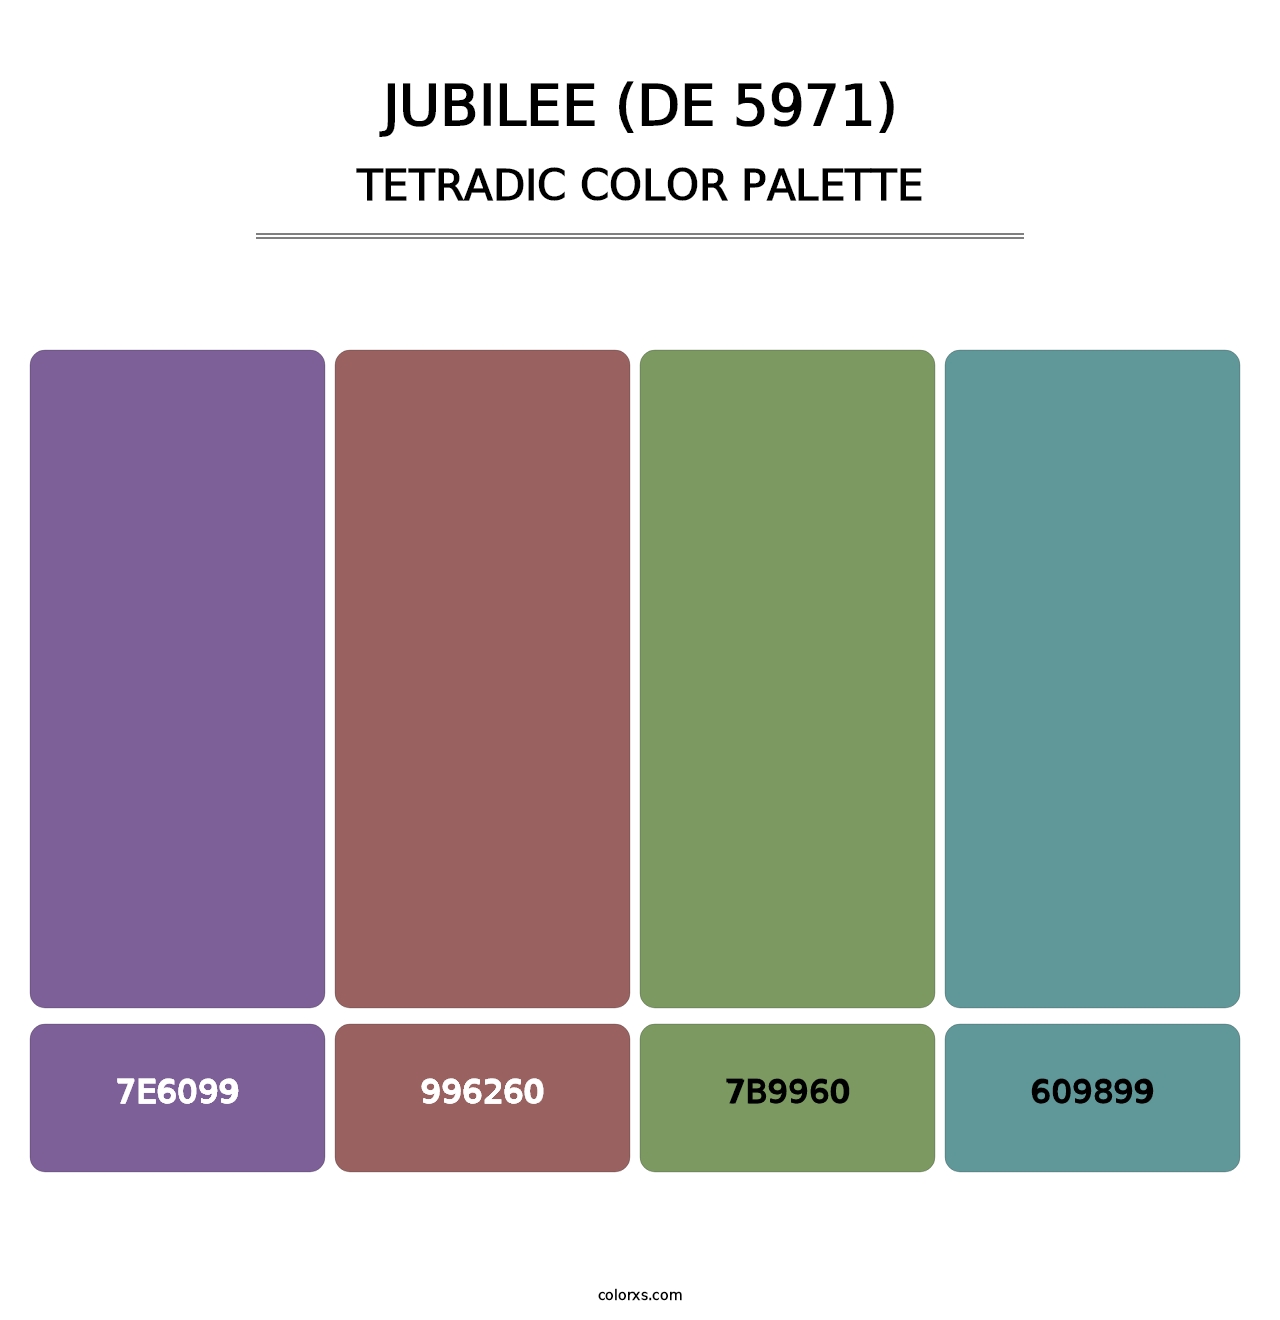 Jubilee (DE 5971) - Tetradic Color Palette